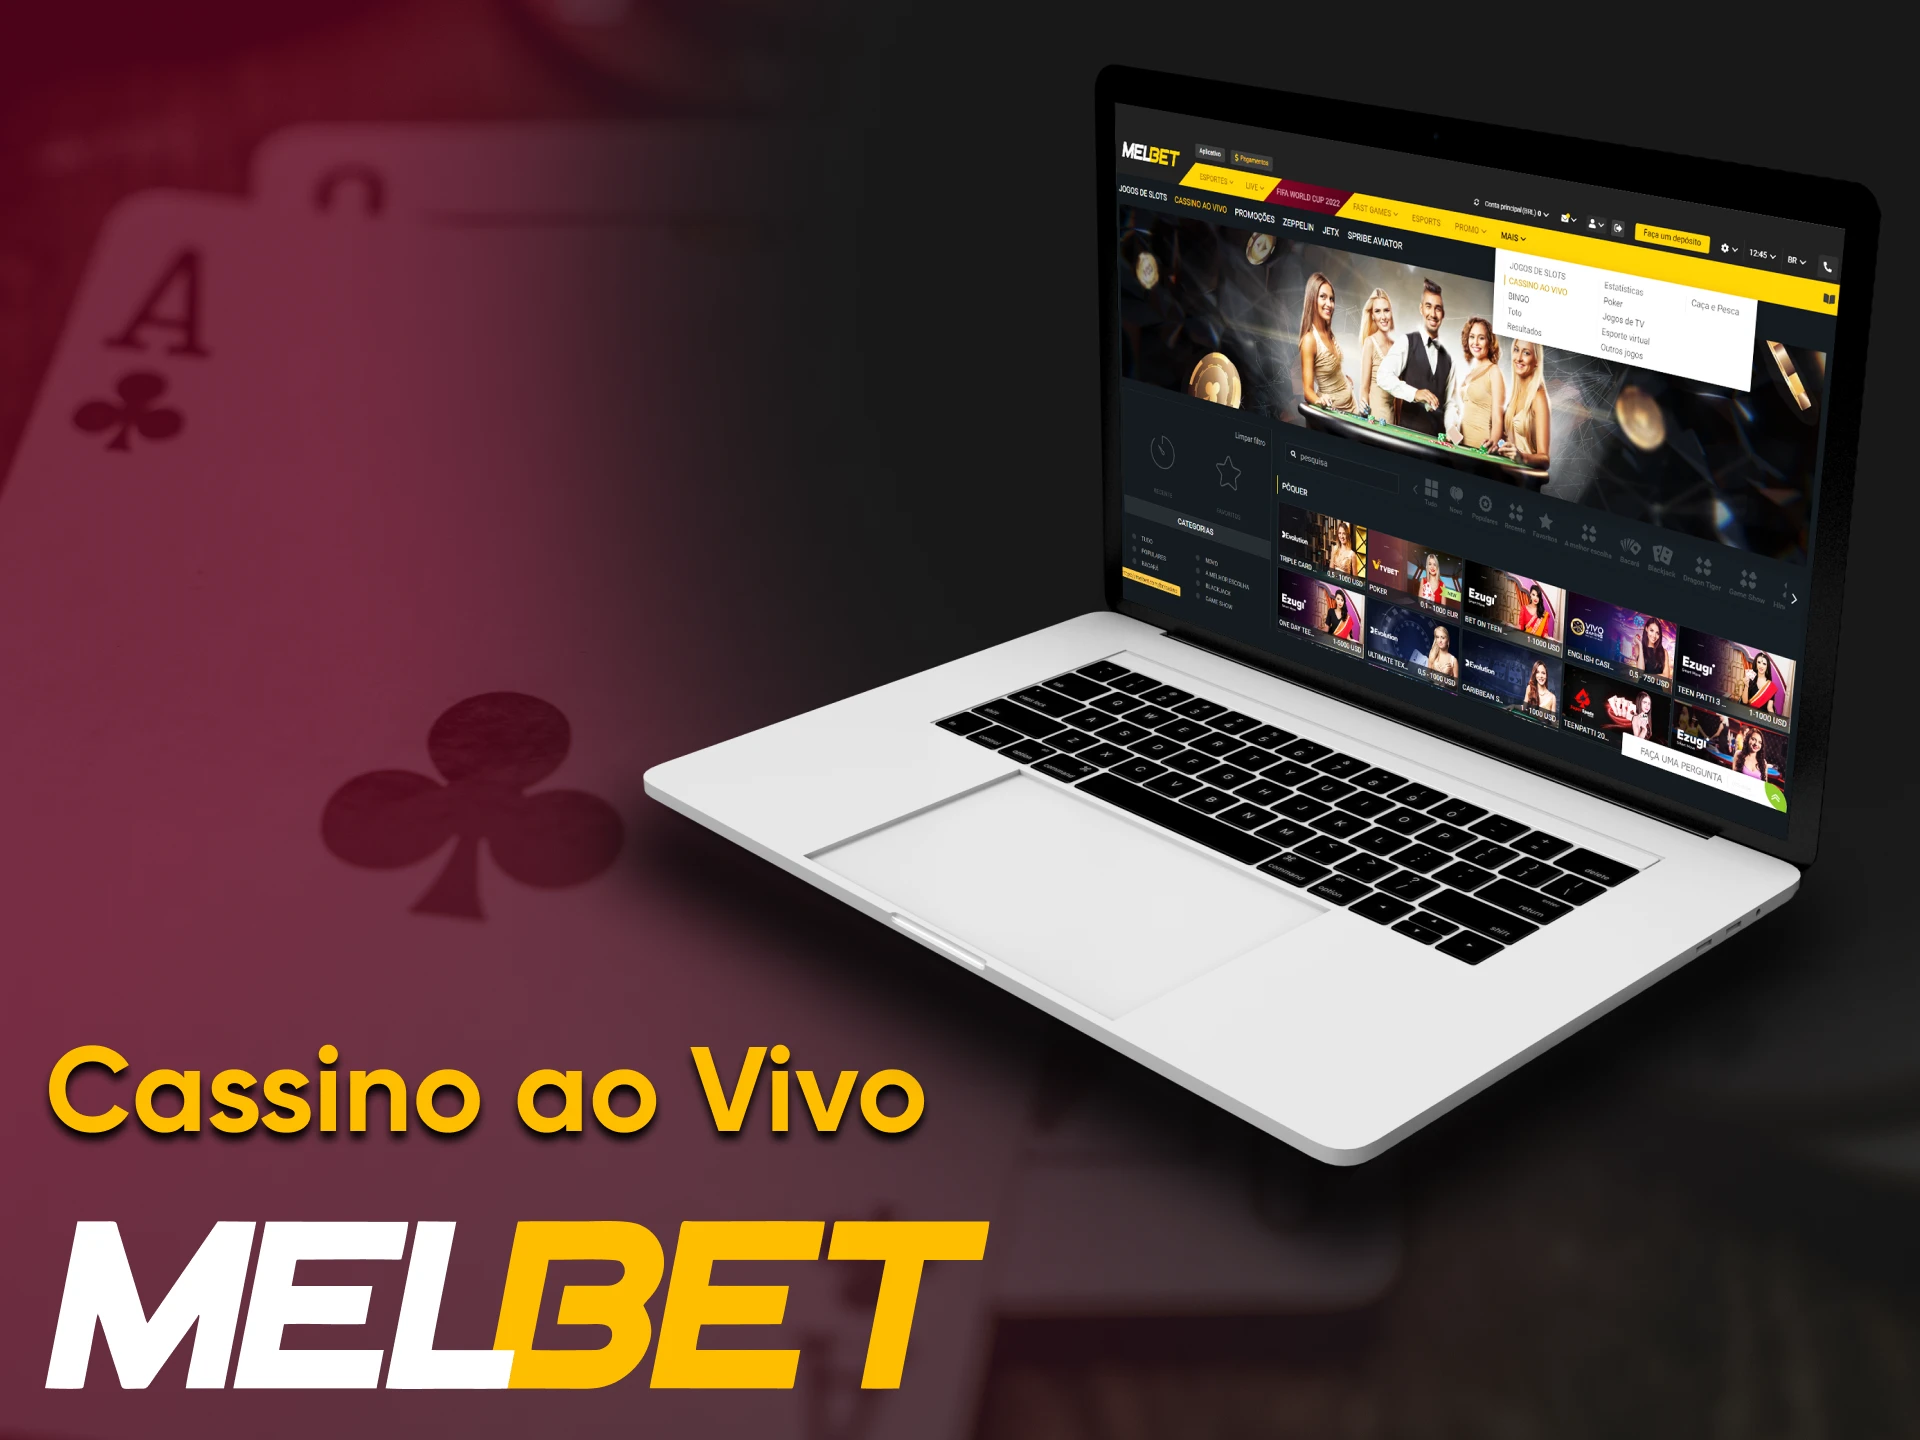 The Melbet website has a live casino.